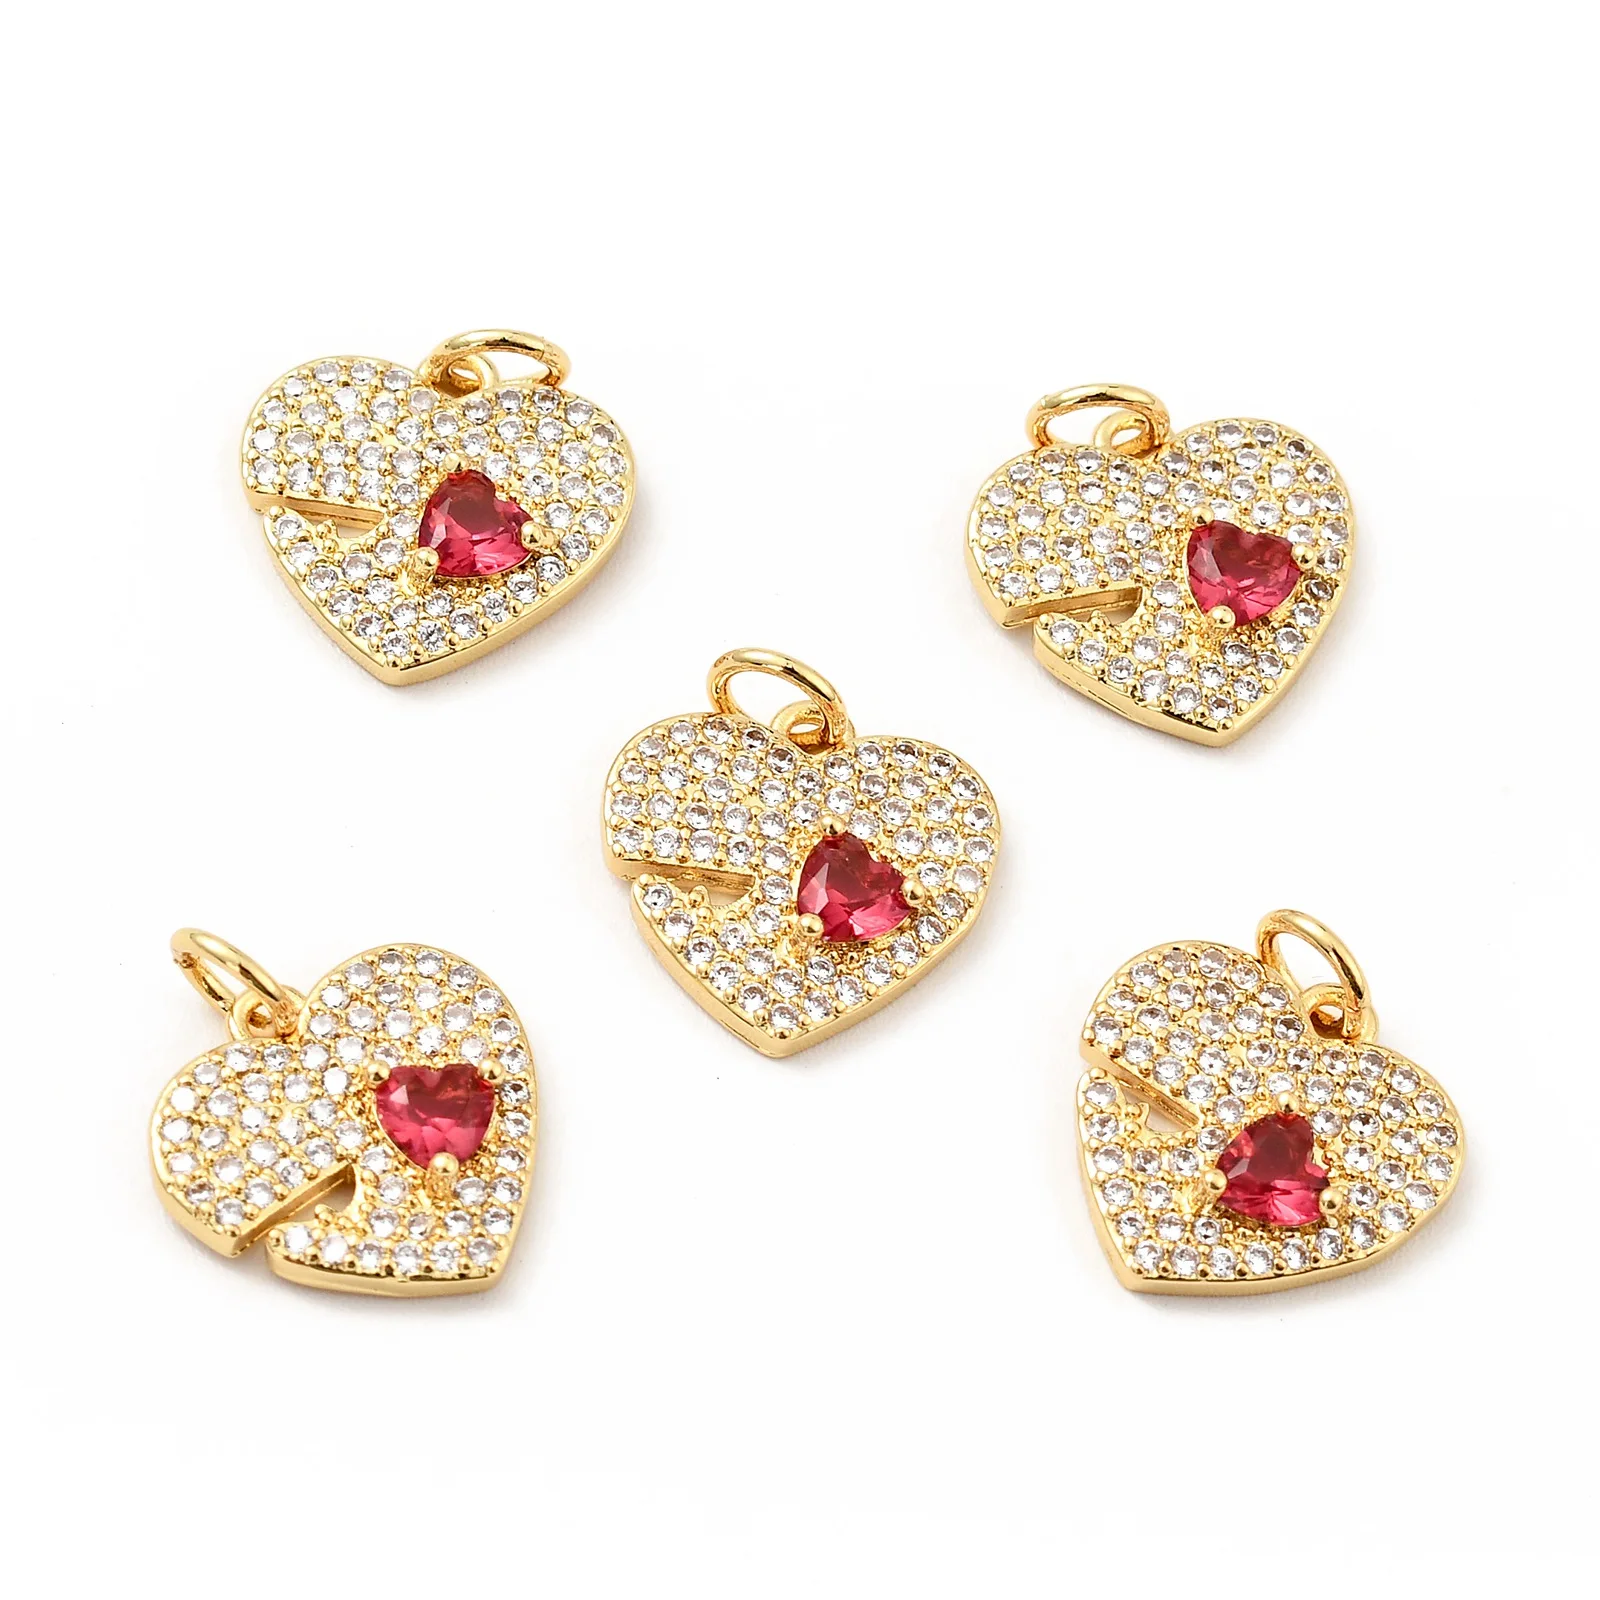 

10 шт., медные Подвески в форме сердца Pandahall с фианитами, позолоченные подвески для ожерелья, браслета, сережек, ювелирных изделий, подарок